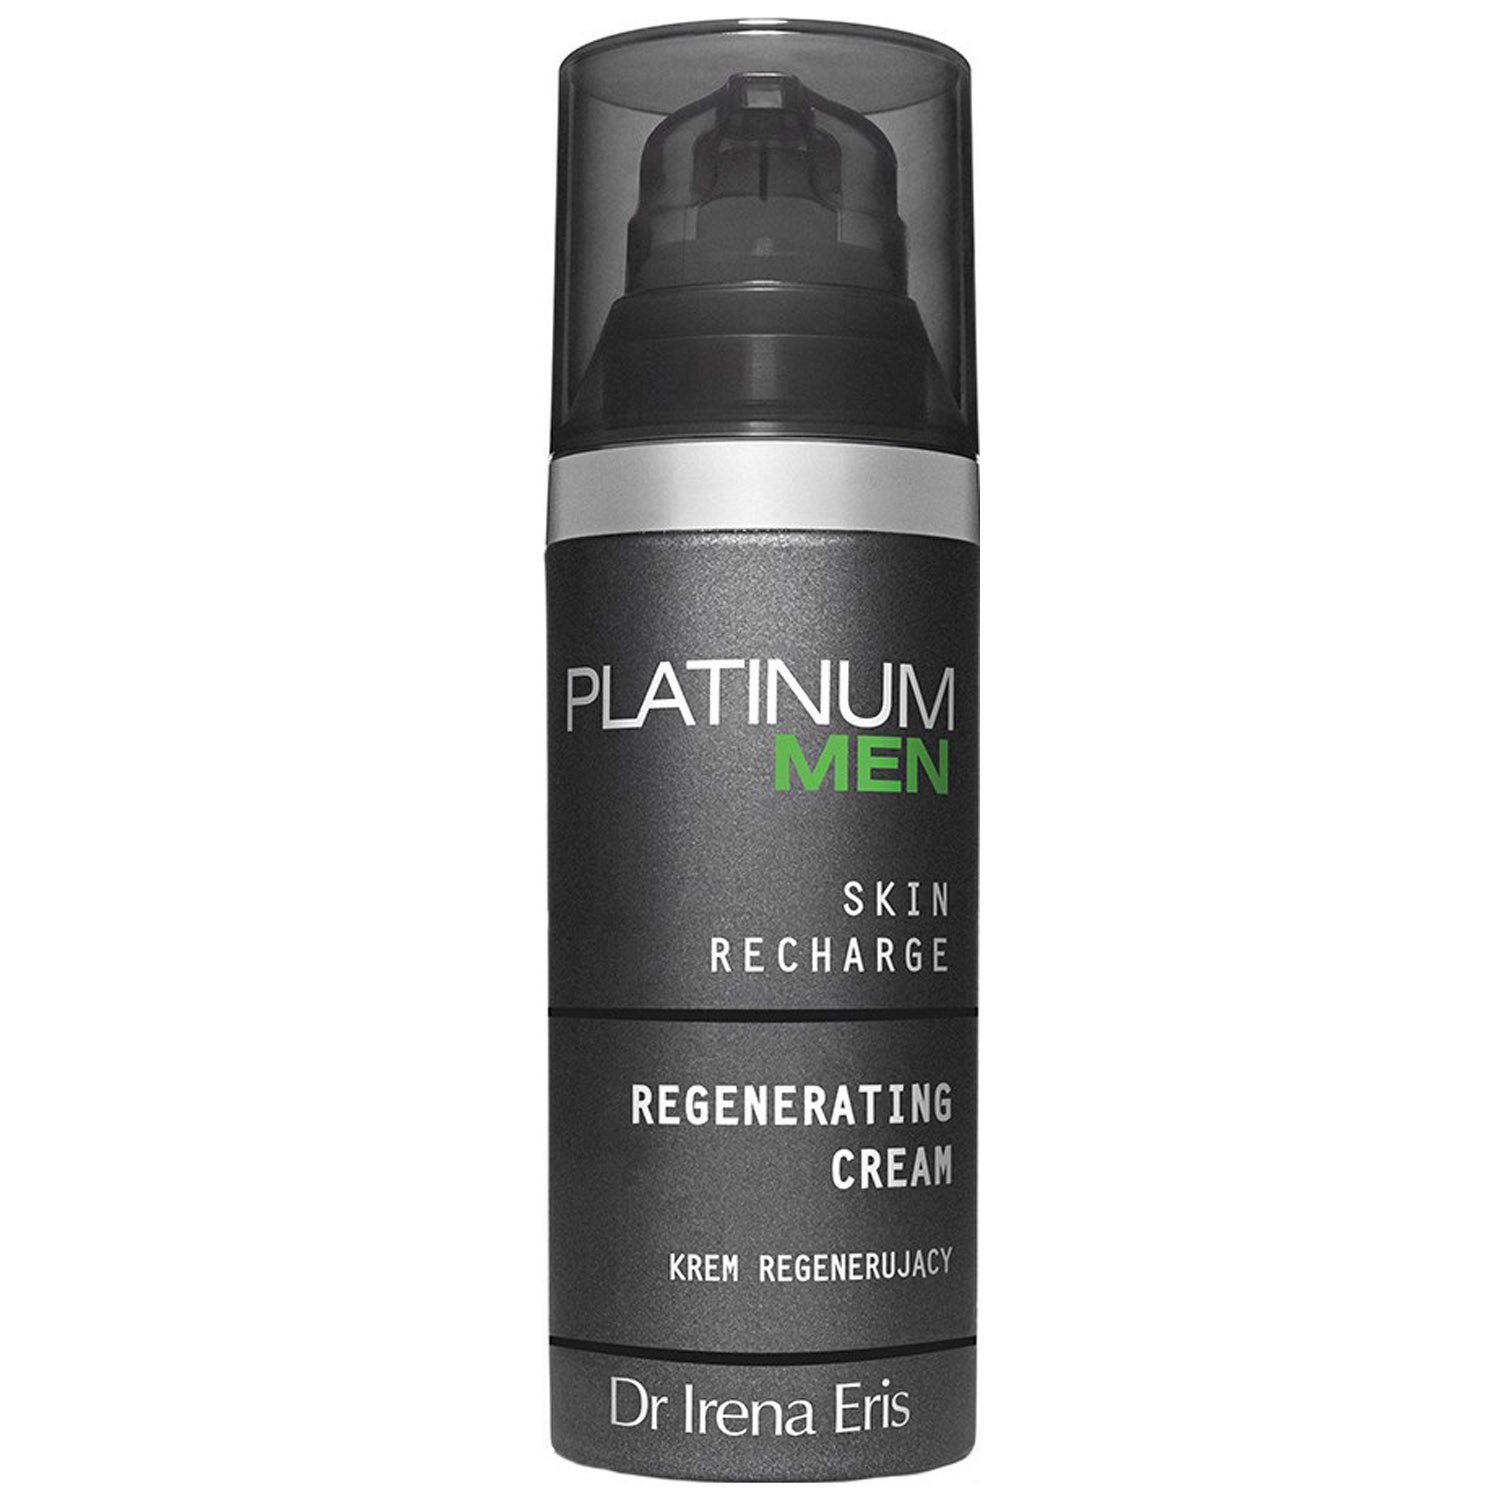 Крем для лица Dr Irena Eris Platinum Men Regenerating Cream, восстанавливающий, 50 мл - фото 1